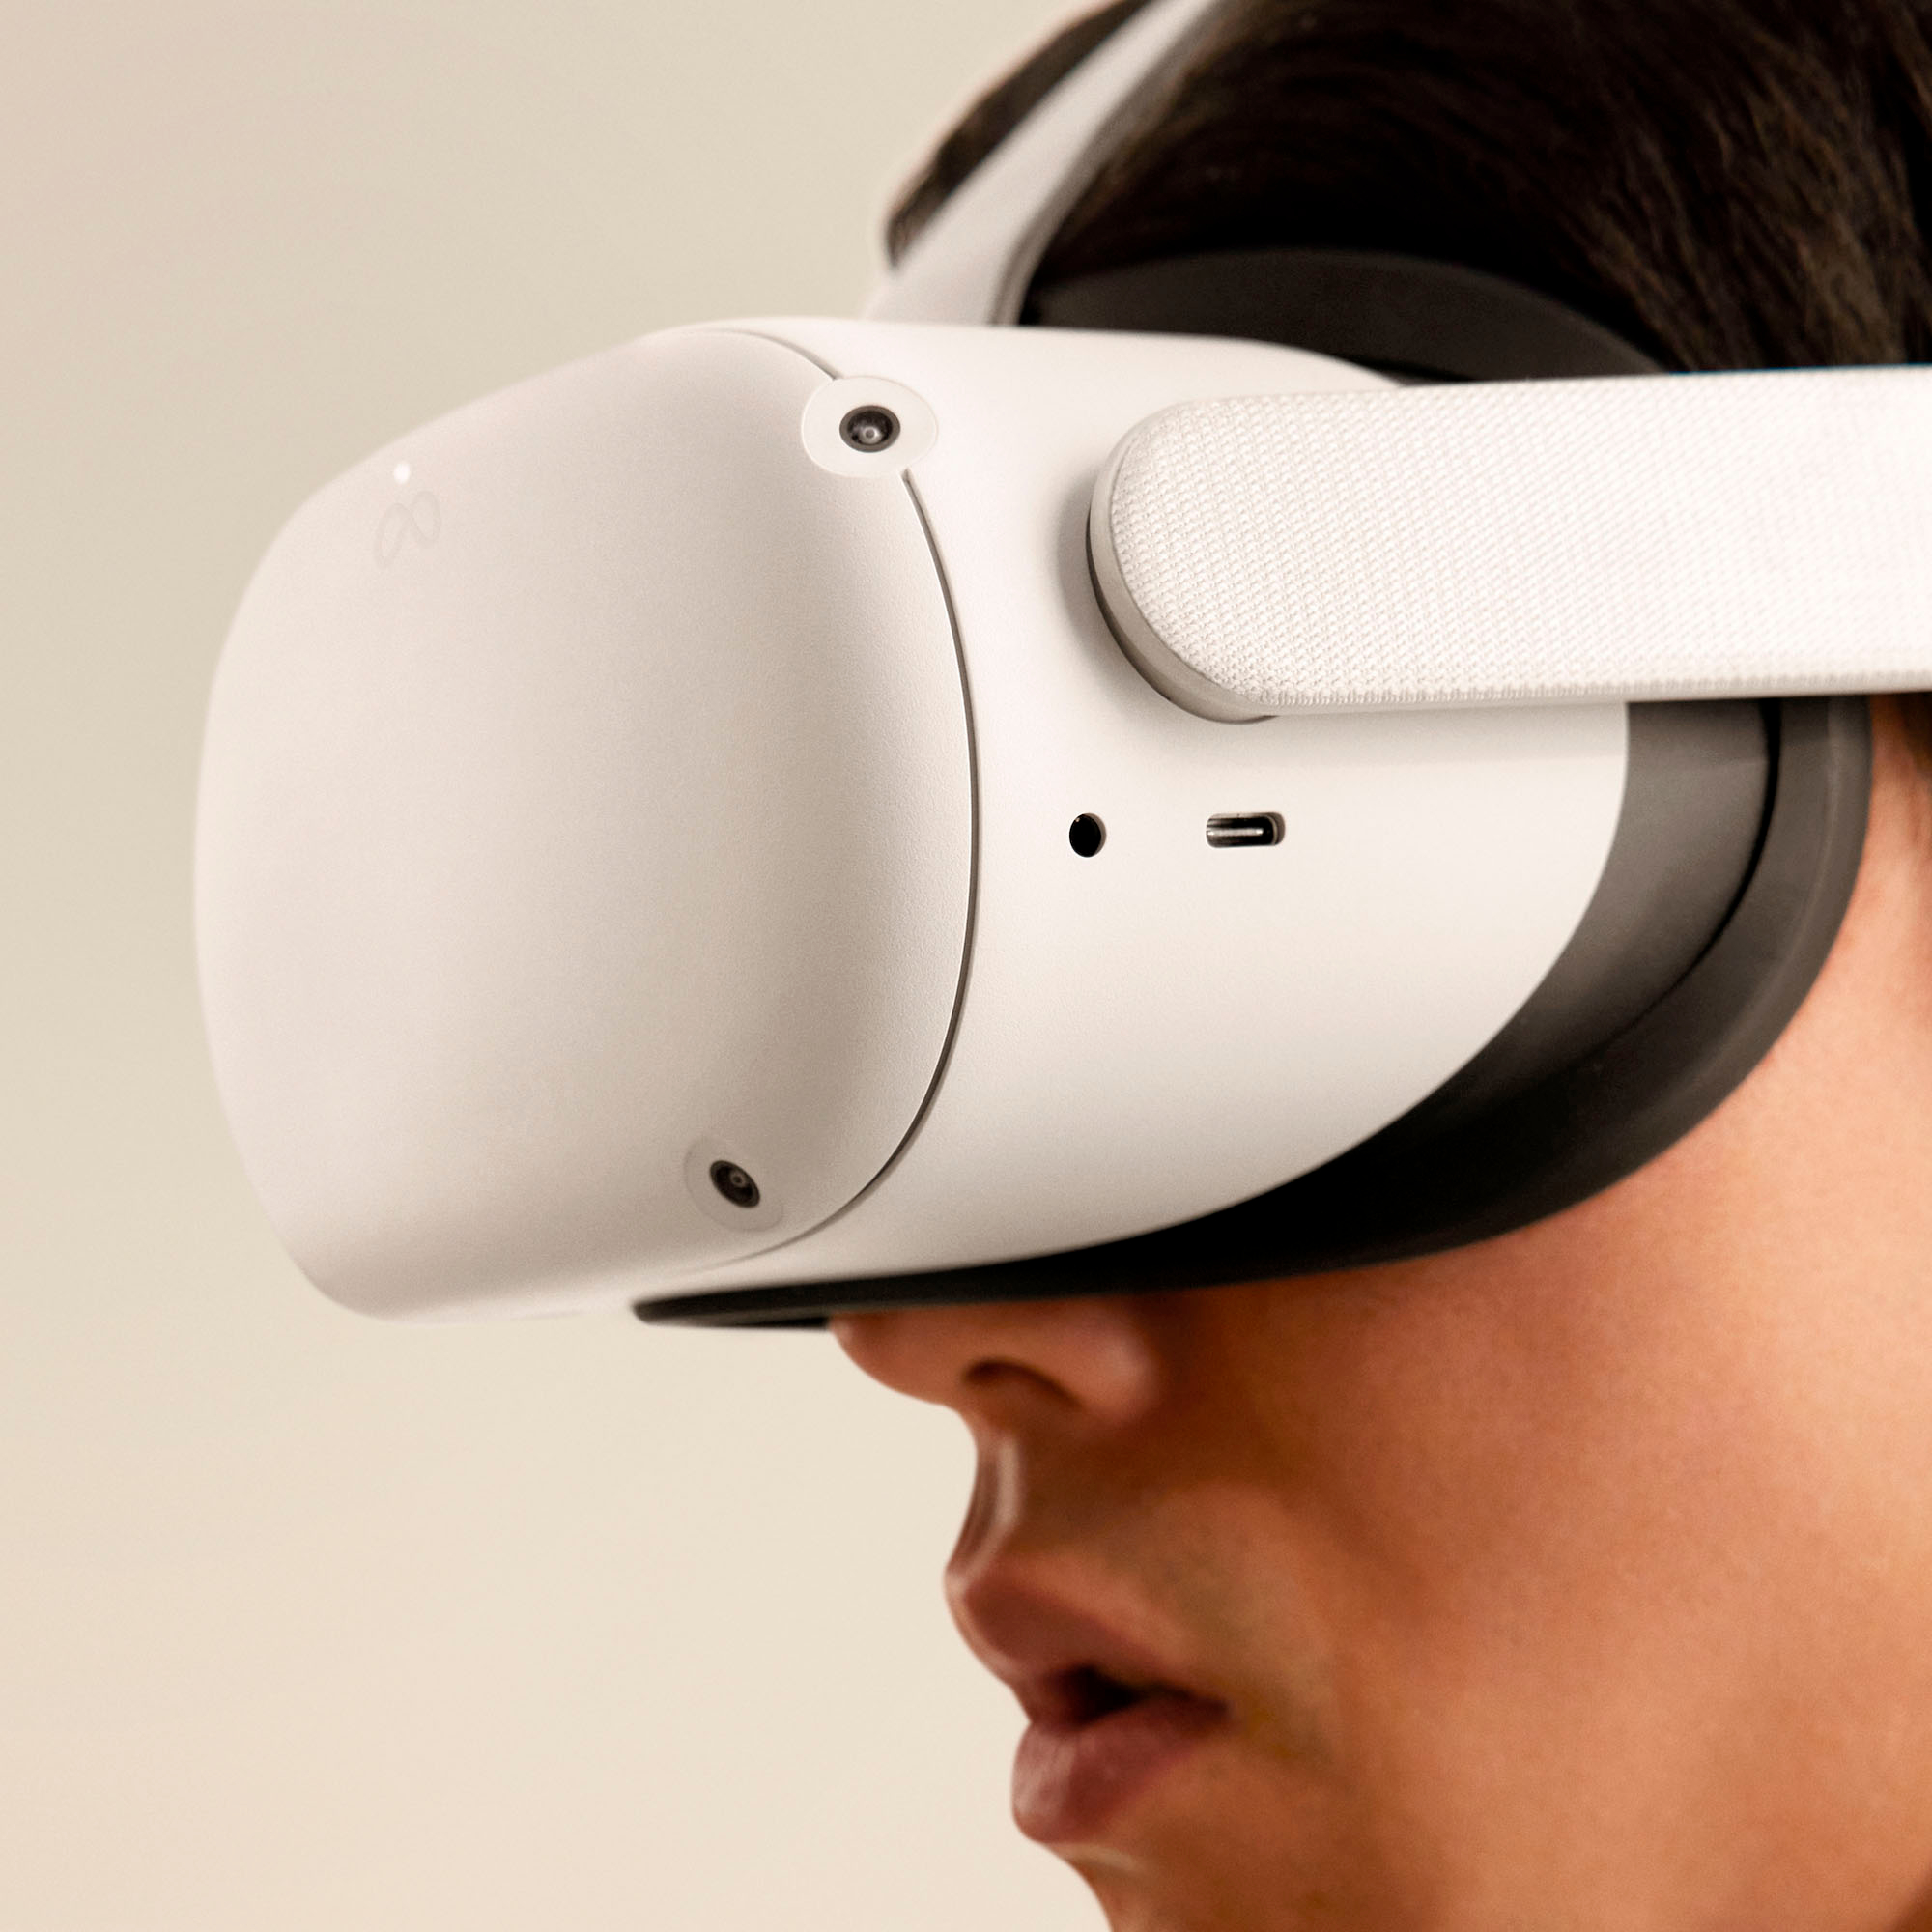 テレビ/映像機器 その他 Meta Quest 2 Advanced All-In-One Virtual Reality Headset 128GB 899 